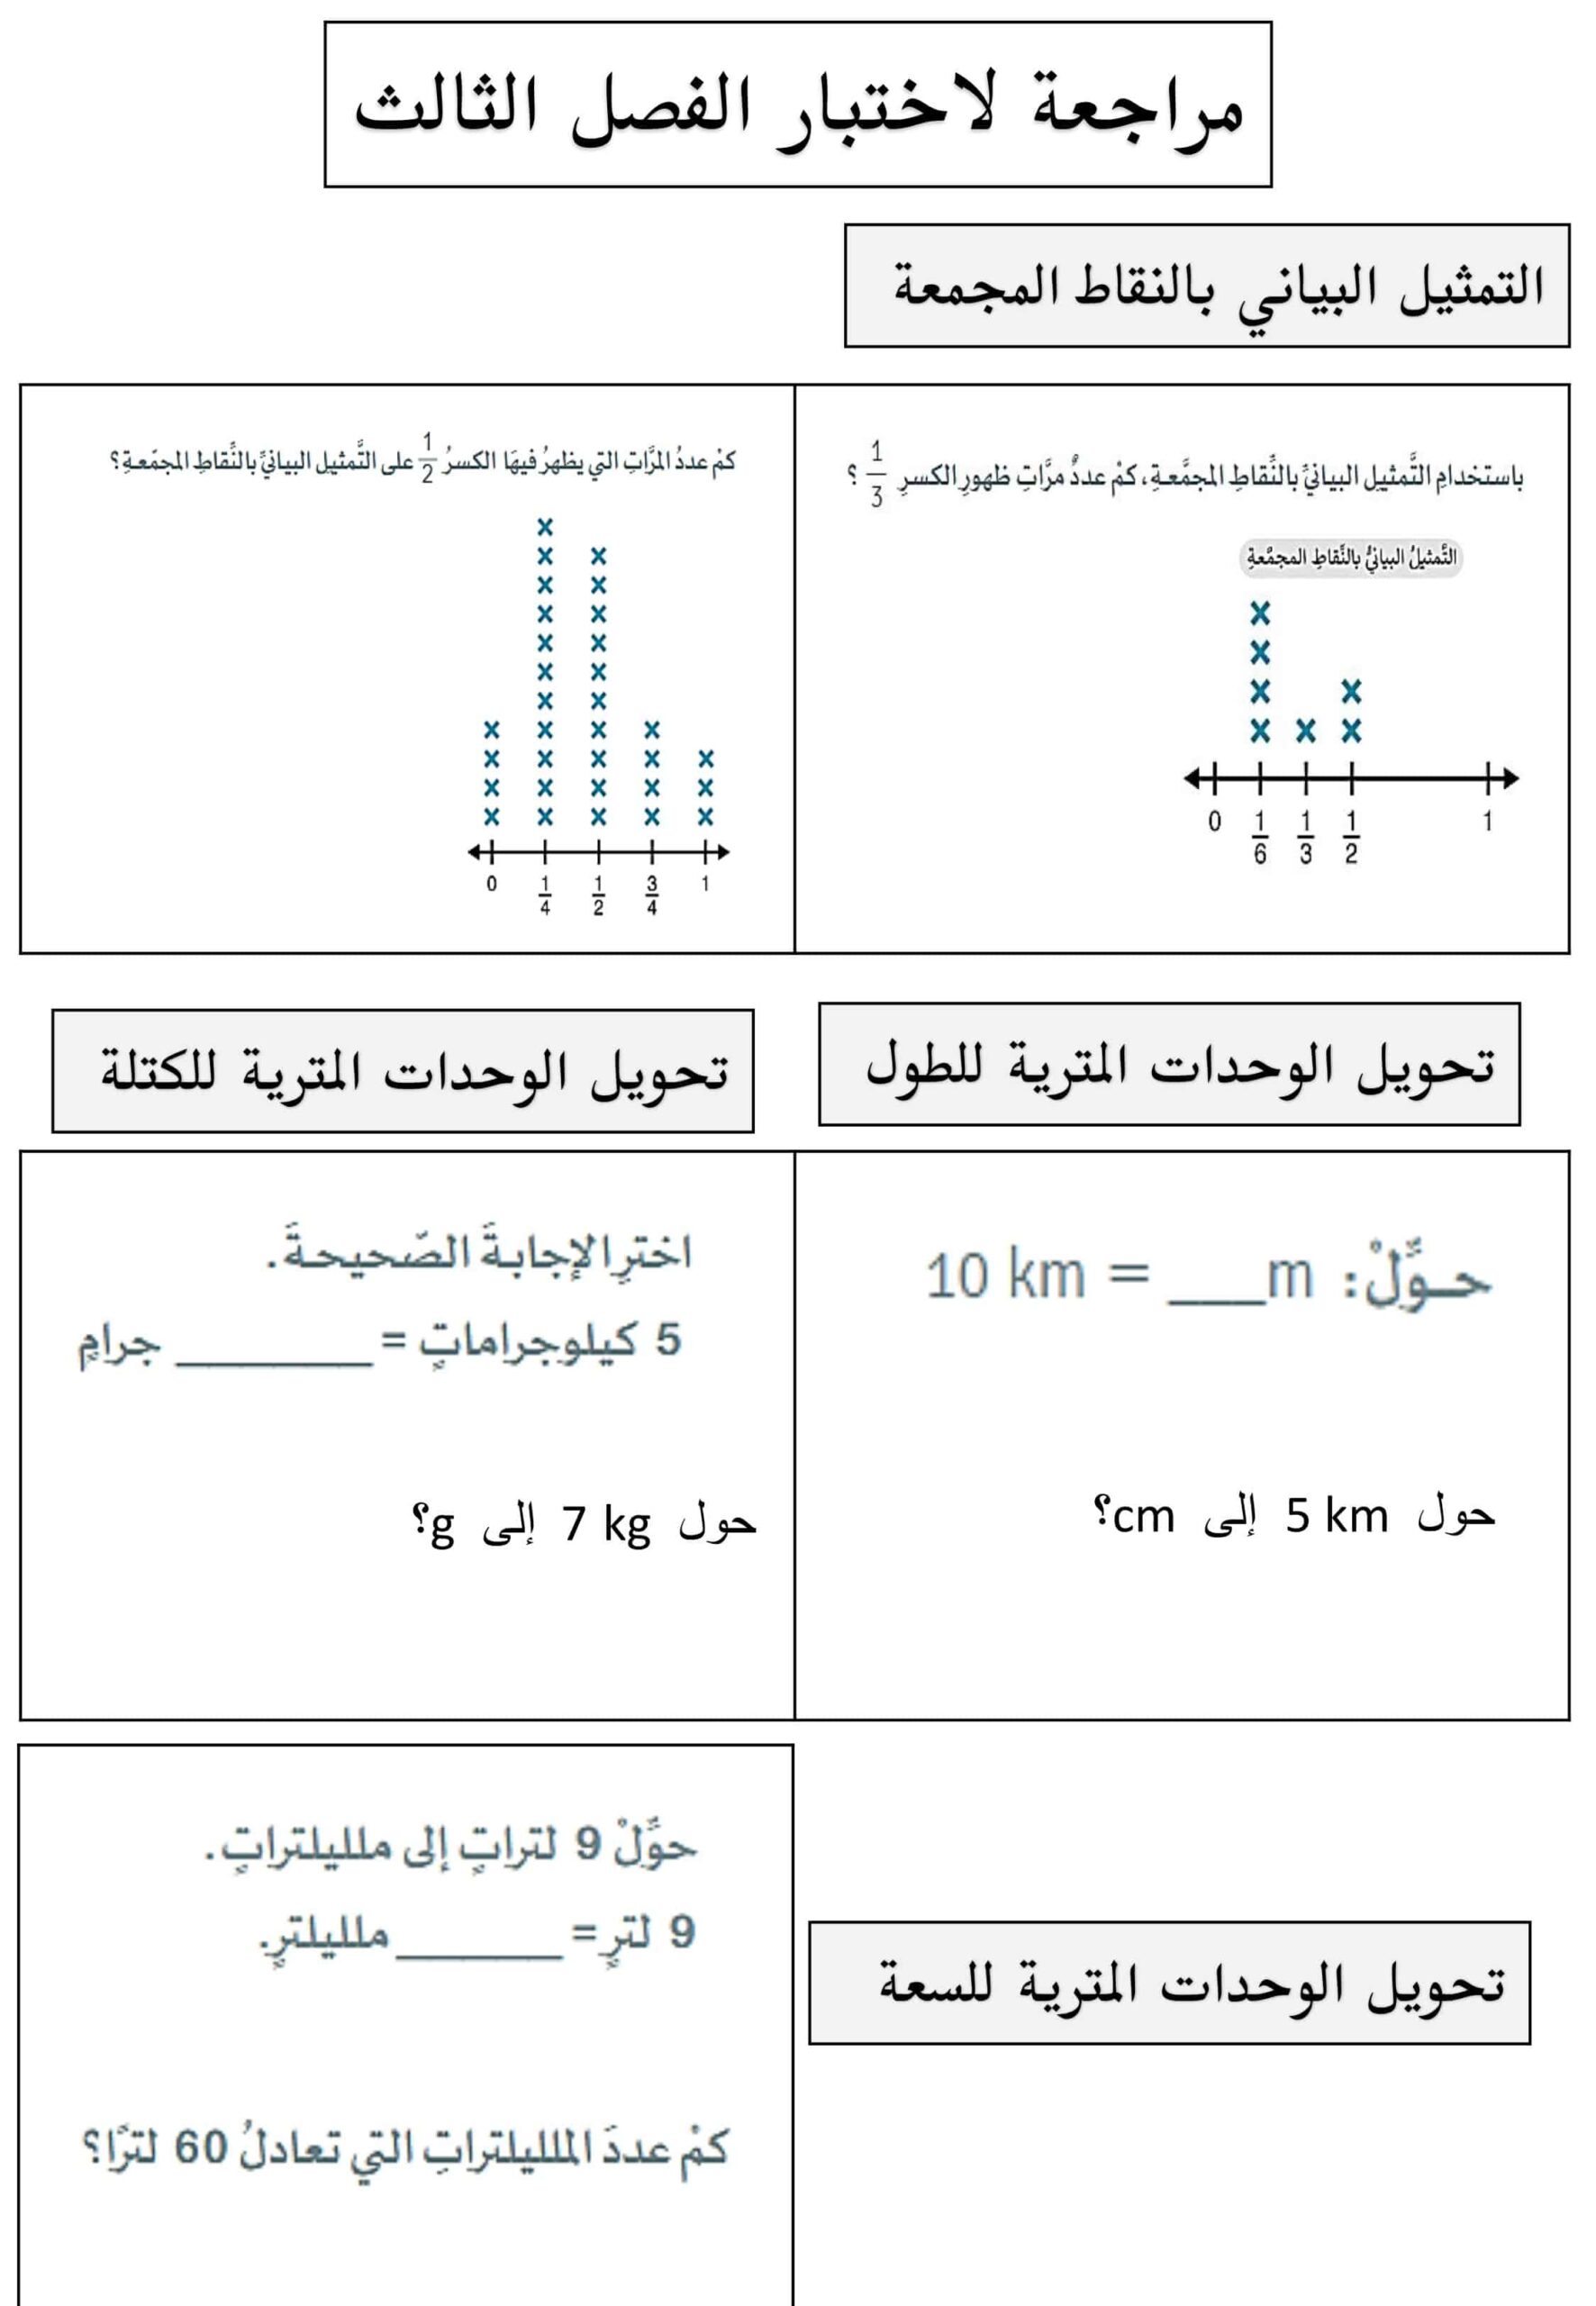 أوراق عمل مراجعة للامتحان الرياضيات المتكاملة الصف الخامس